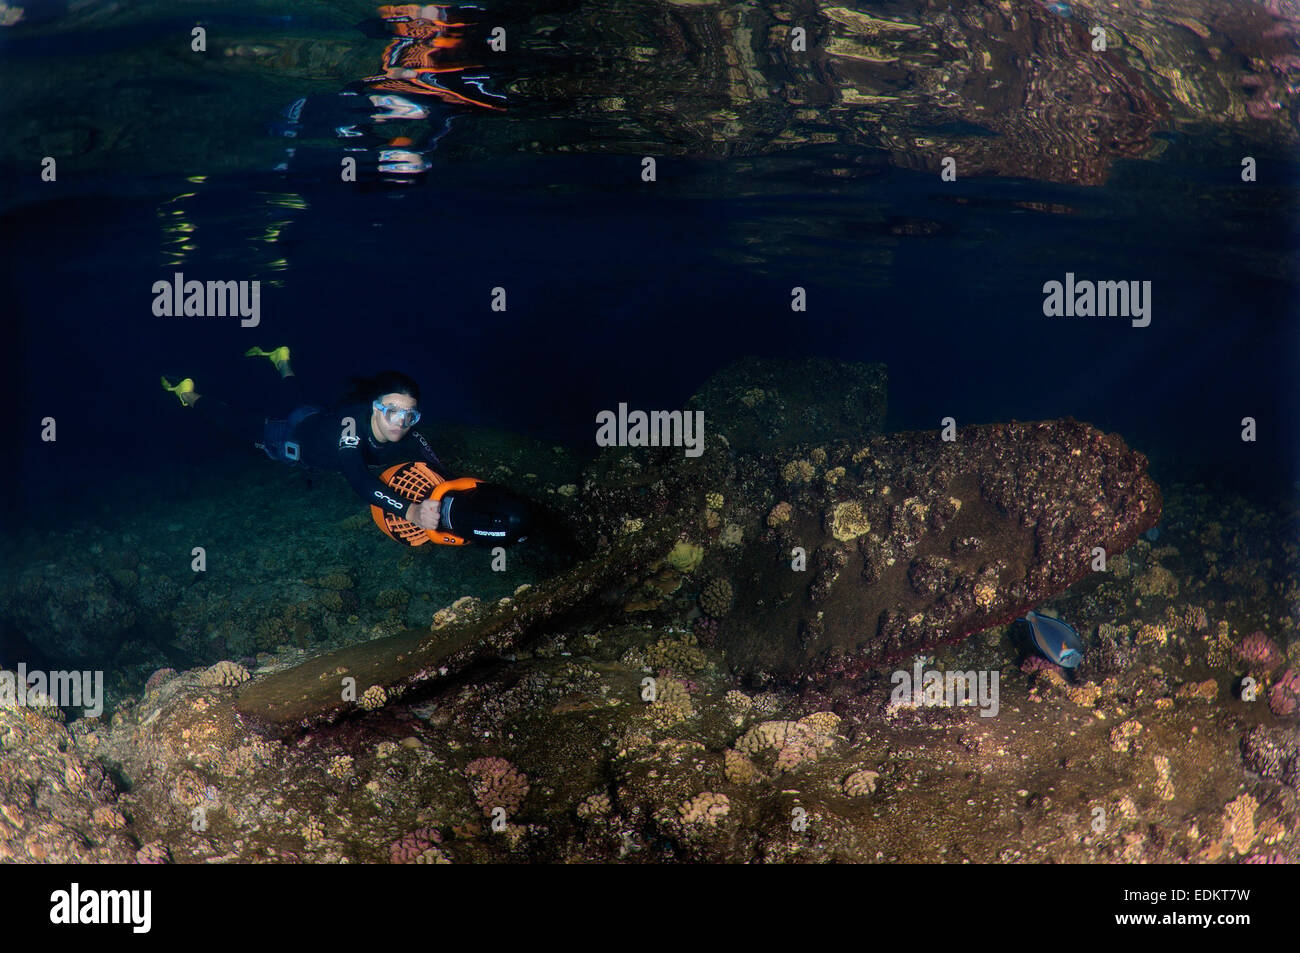 Apneista chapuzones para moto subacuática, buceo nocturno en el Mar Rojo, Egipto Foto de stock